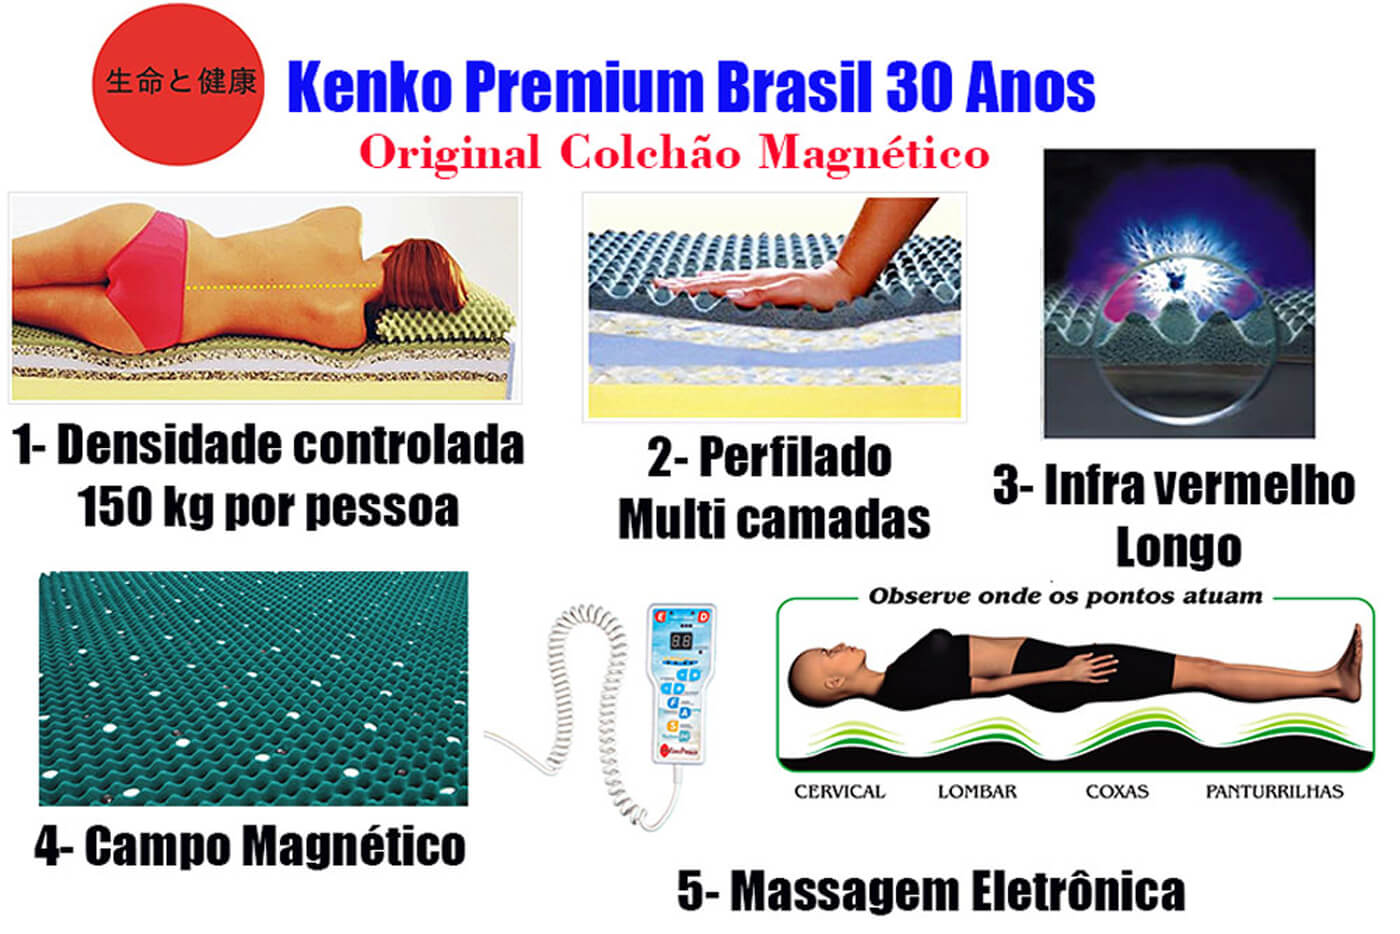 Colchão Magnético Kenko Premium Solteiro 0,88x1,88x25cm Plus C/ Massagem Eletrônica Energia Bioquãntica + Cromoterapia  - Kenko Premium Colchões